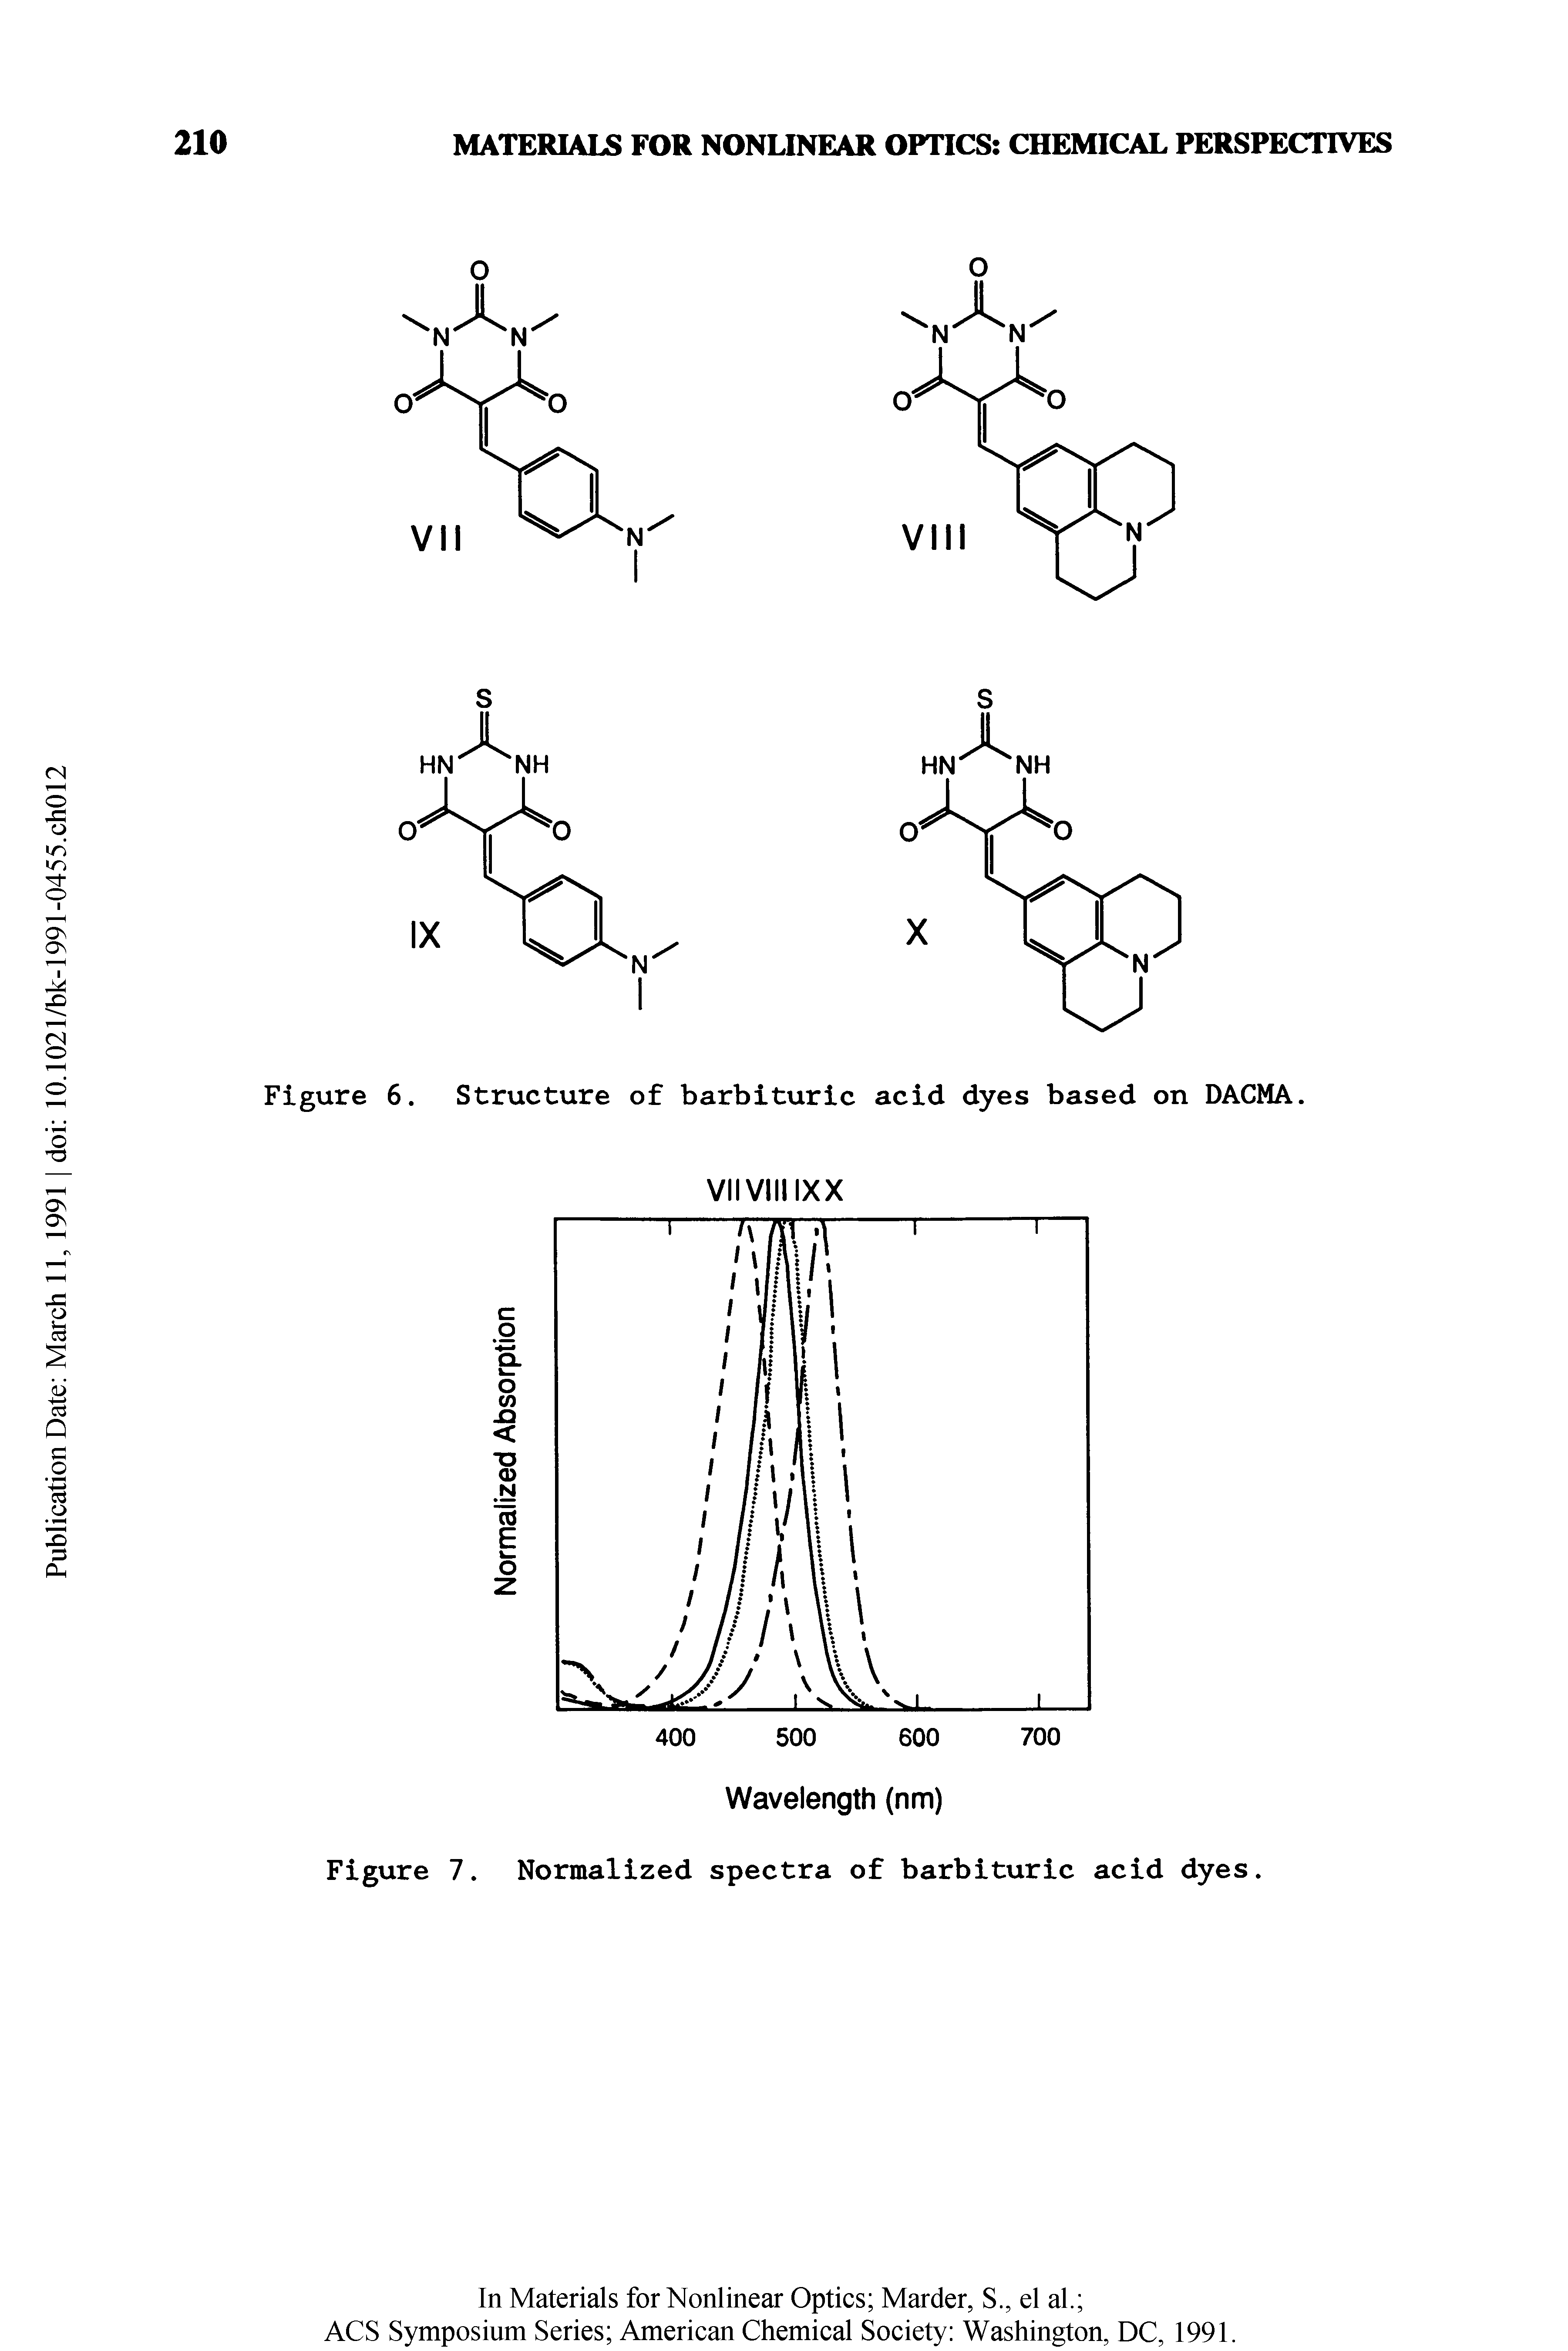 Figure 6. Structure of barbituric acid dyes based on DACMA.